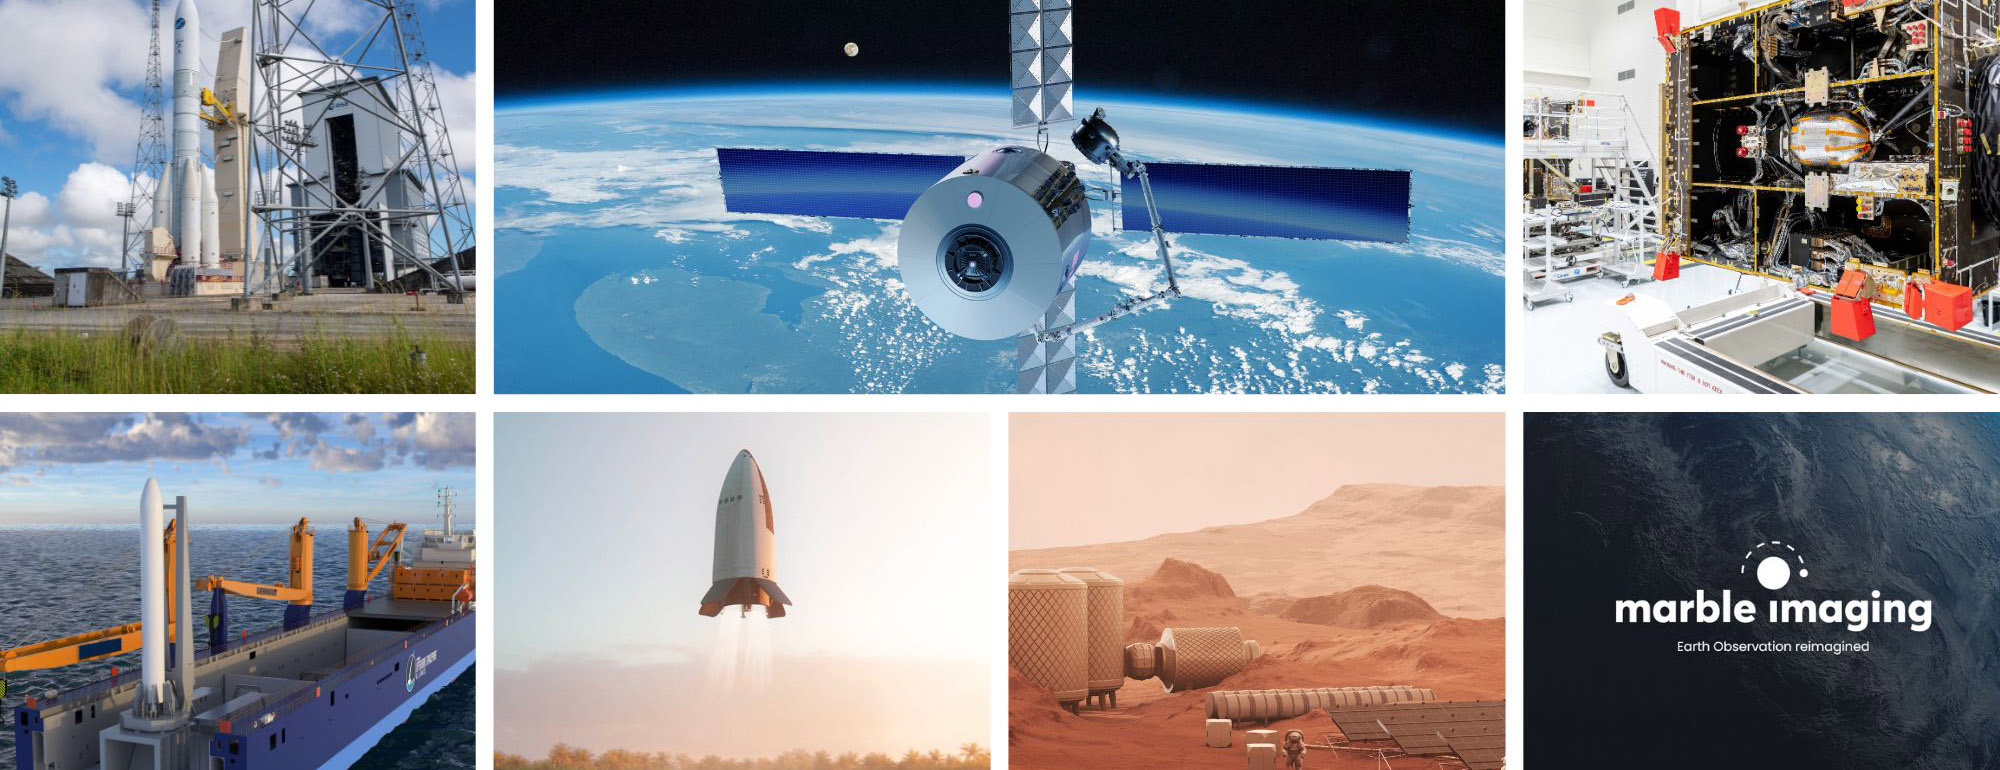 Raumfahrtprojekte Collage - Quelle: diverse